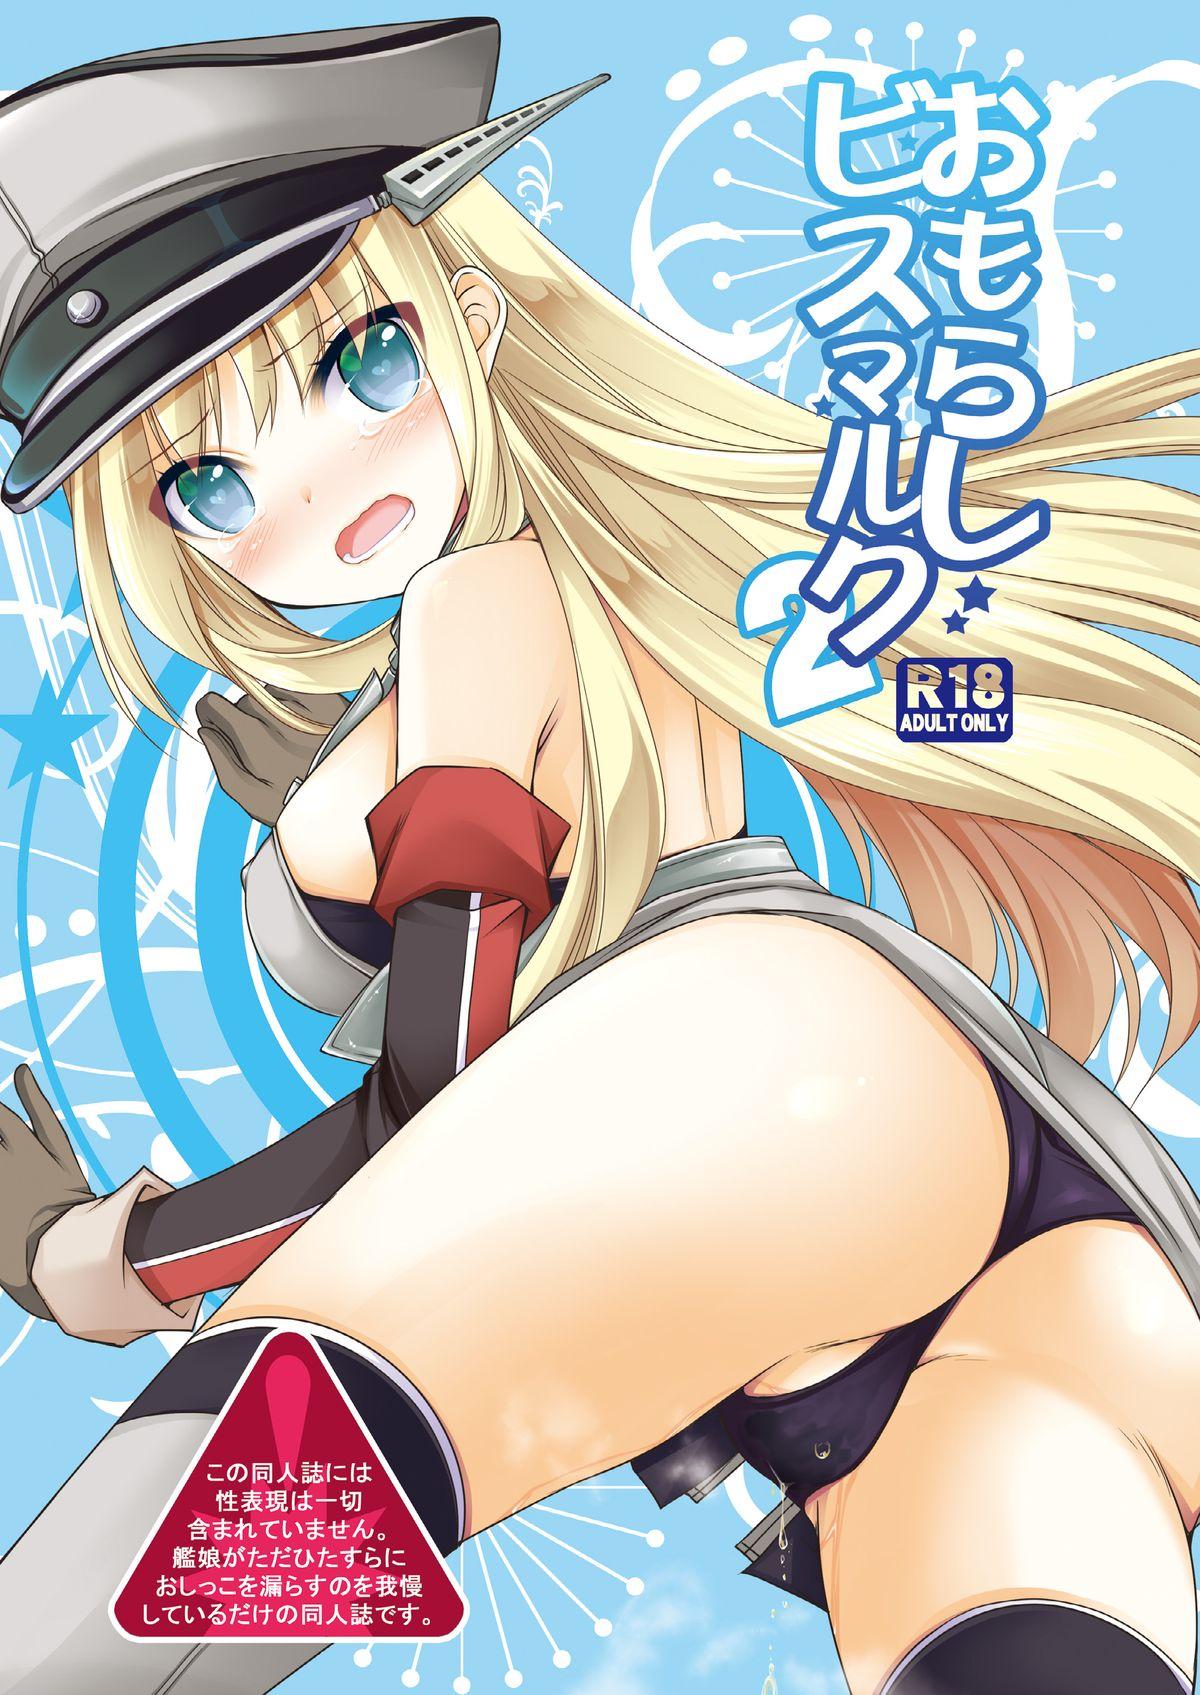 Omorashi Bismarck 2 0